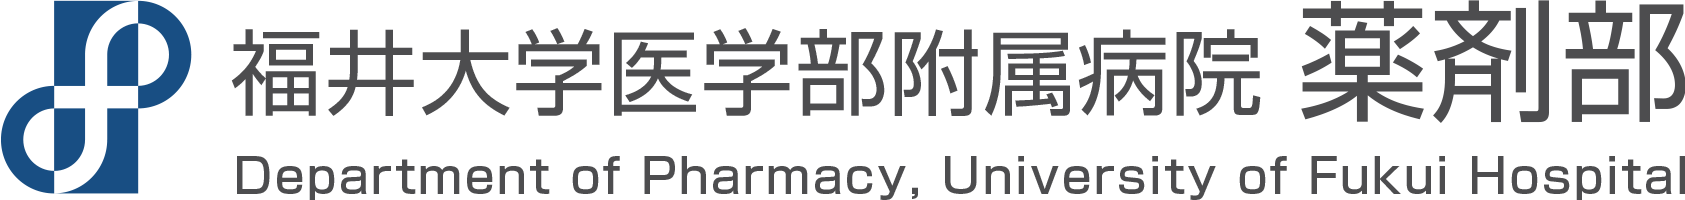 連携のための取り組み :: 保険薬局の方へ :: 福井大学医学部附属病院 薬剤部